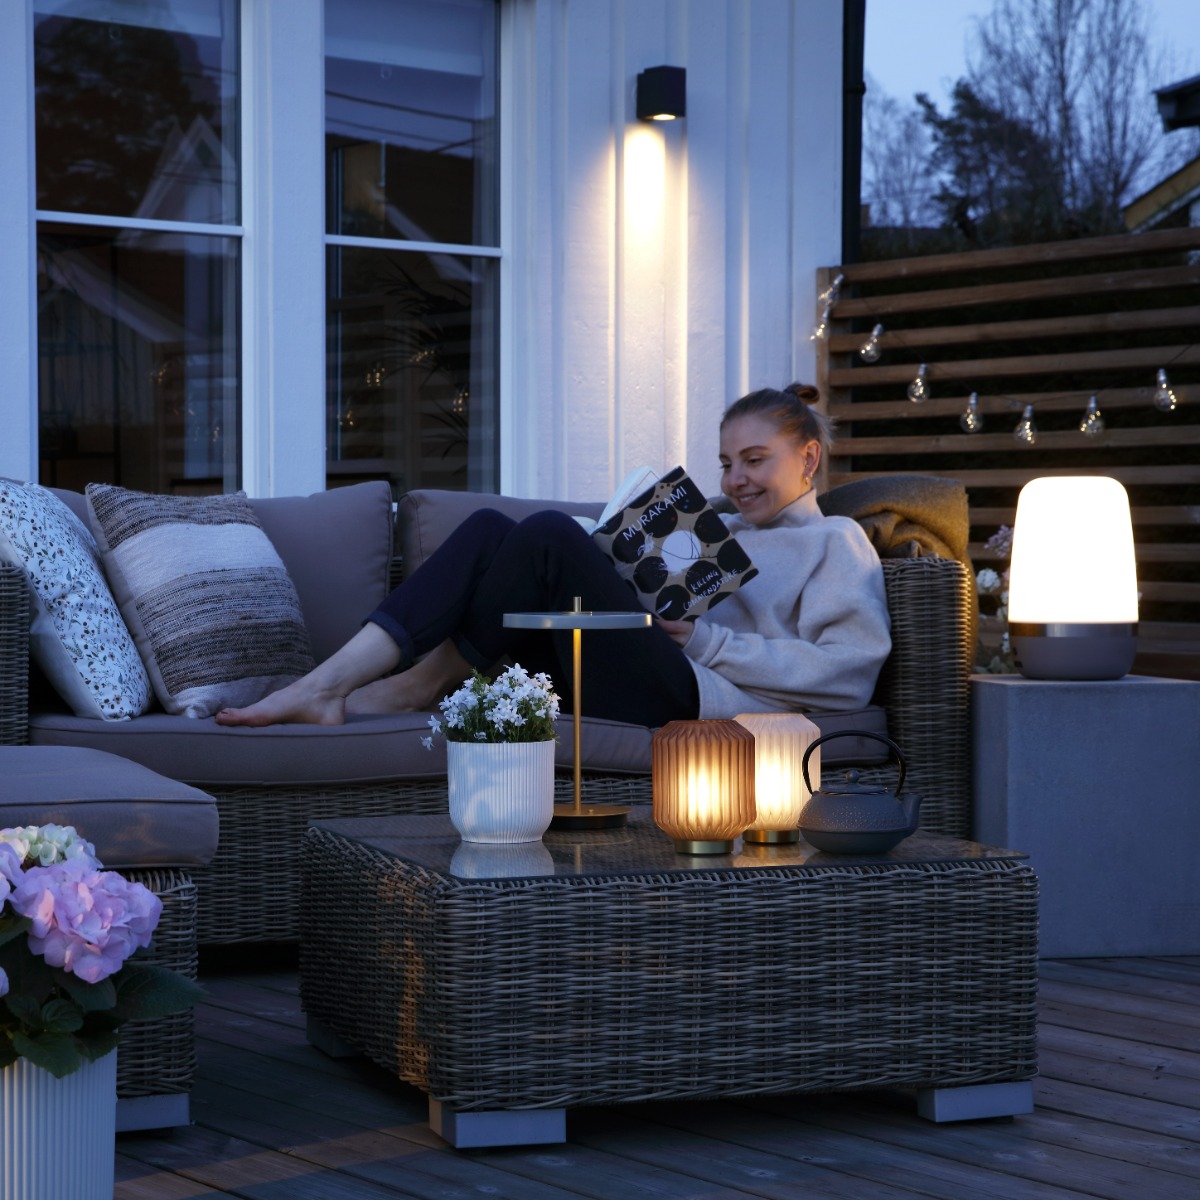 Lys, lamper og belysning på terrassen - tips og råd